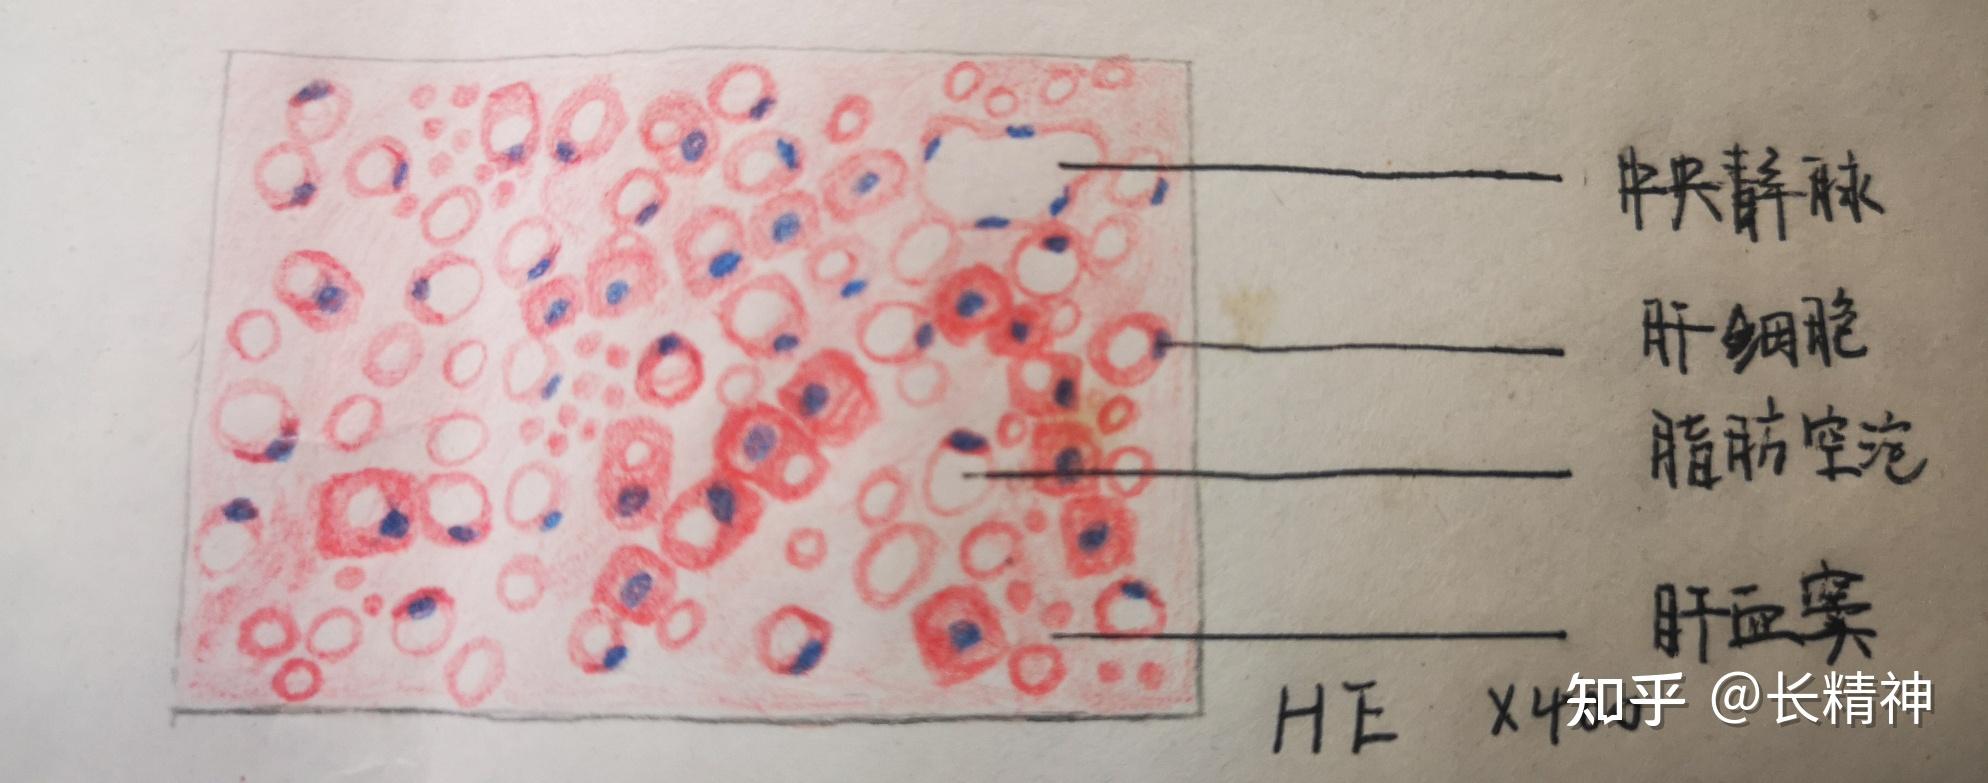 病理学实验红蓝铅笔绘图及描述